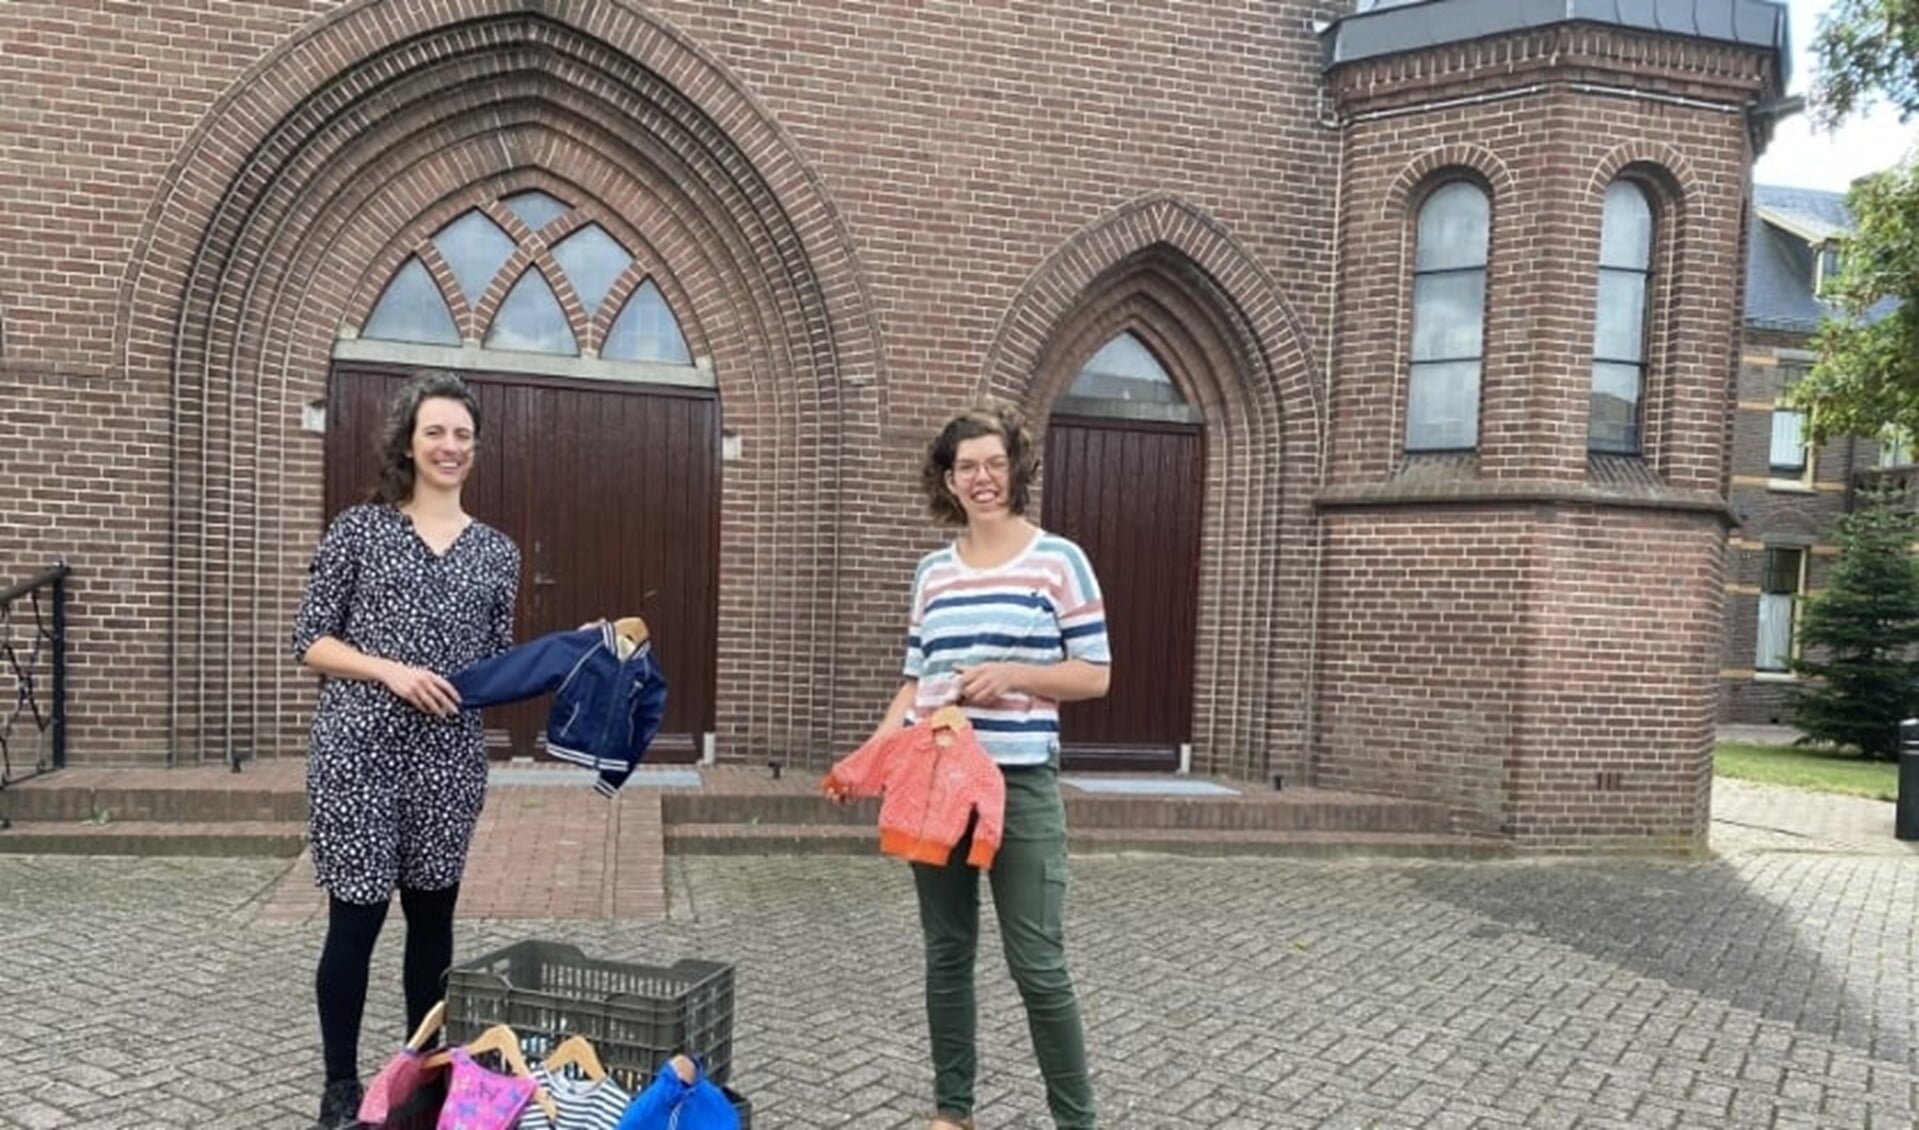 Minke Smits en Wilma Rigo voor de kerk in Nieuw-Dijk. Foto: Karin van der Velden